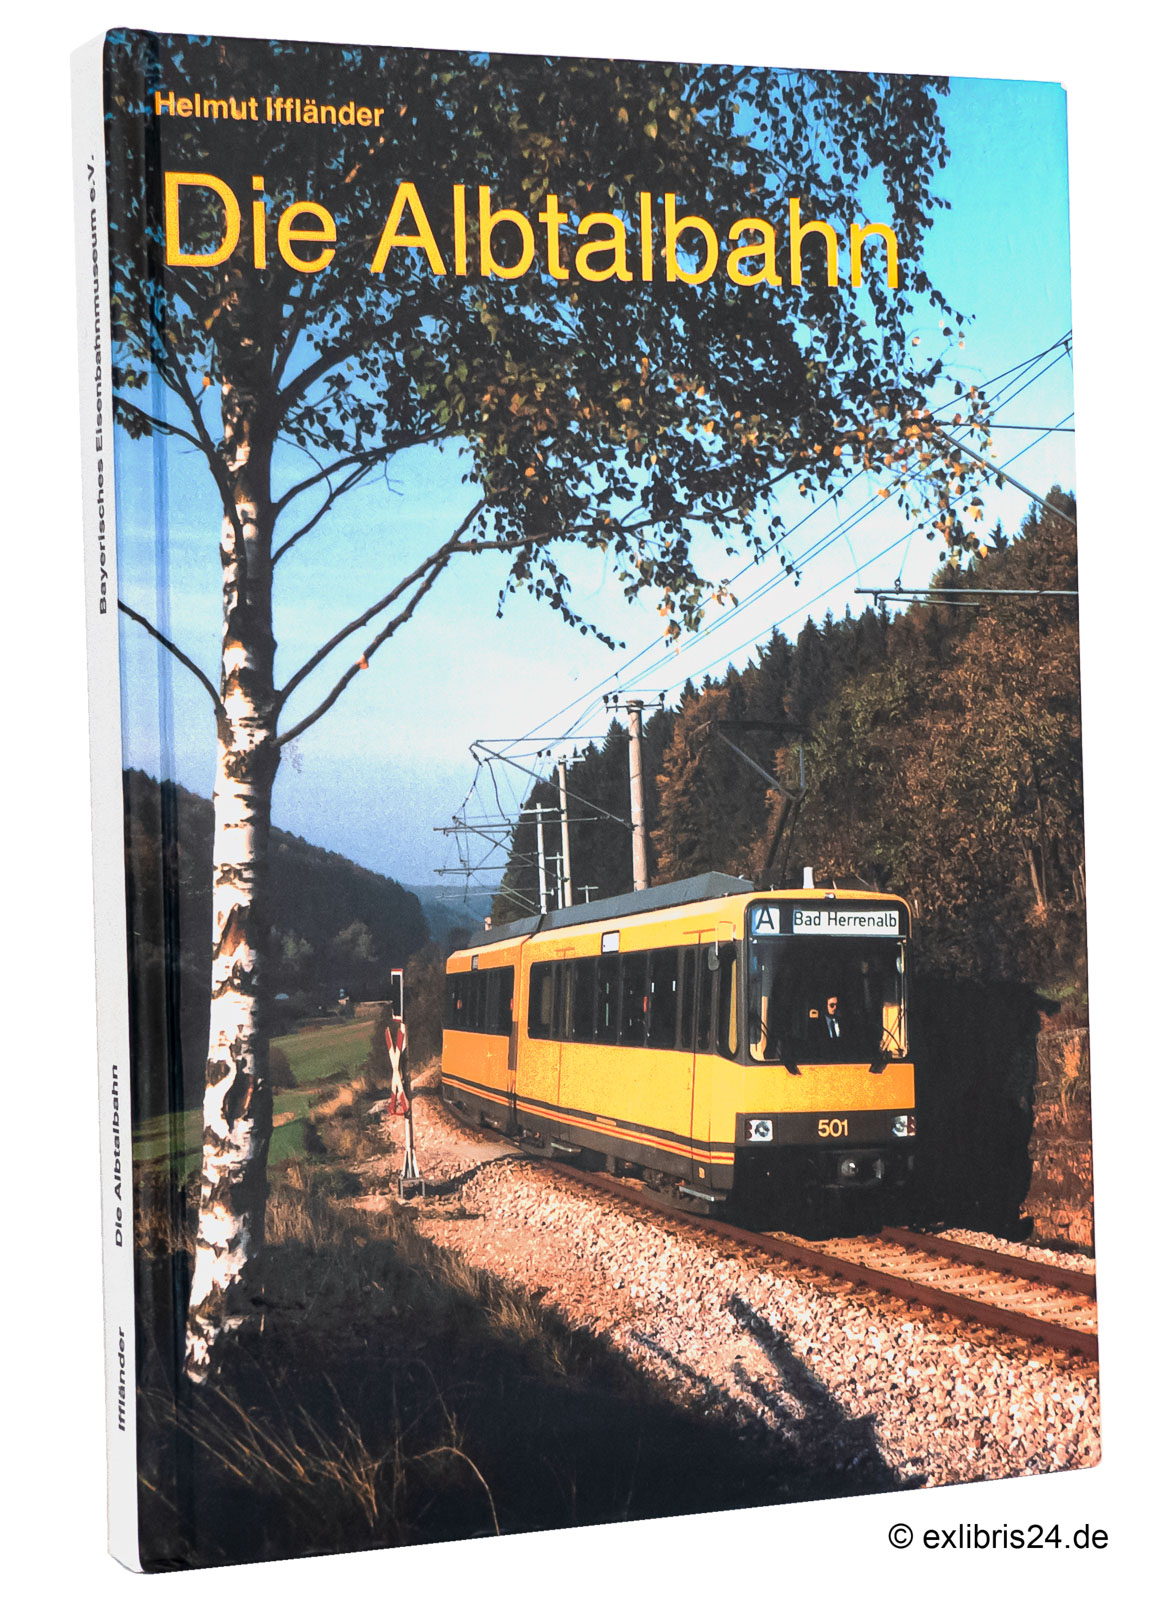 Die Albtalbahn : Von der Bimmelbahn zum modernen Nahverkehrsbetrieb - Iffländer, Helmut